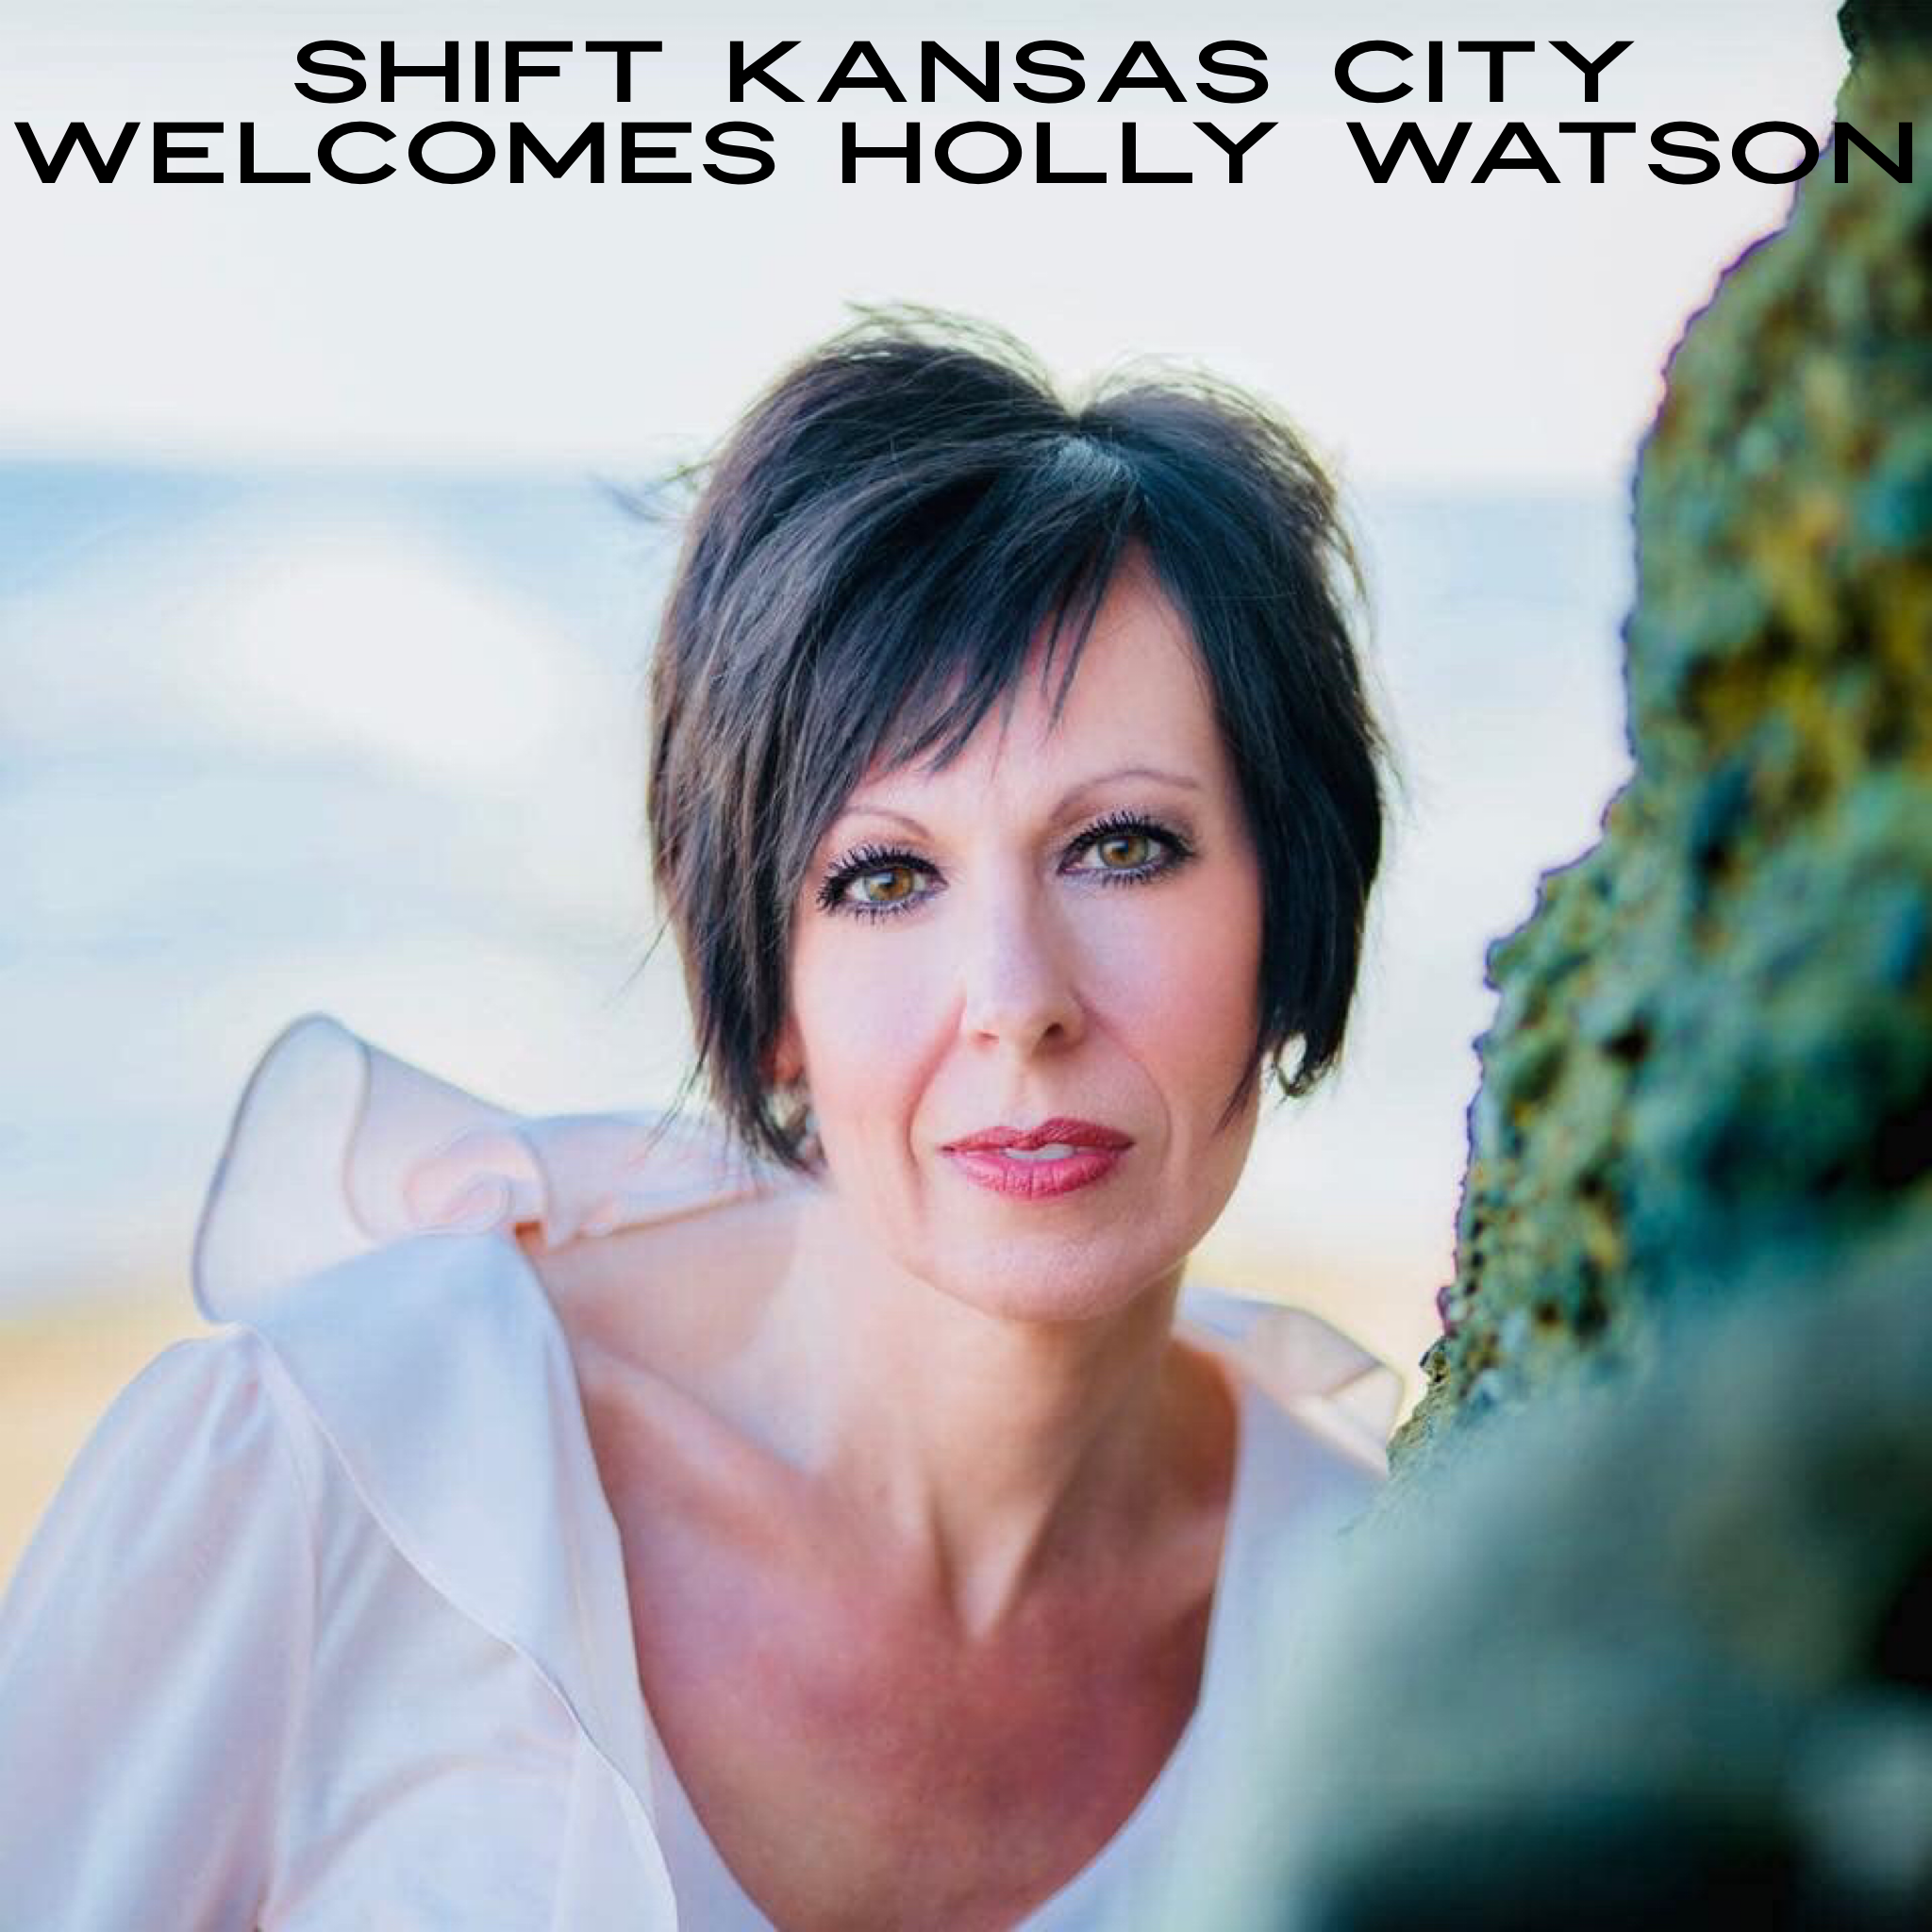 Shift Kansas City Welcomes Holly Watson - 6/11/19